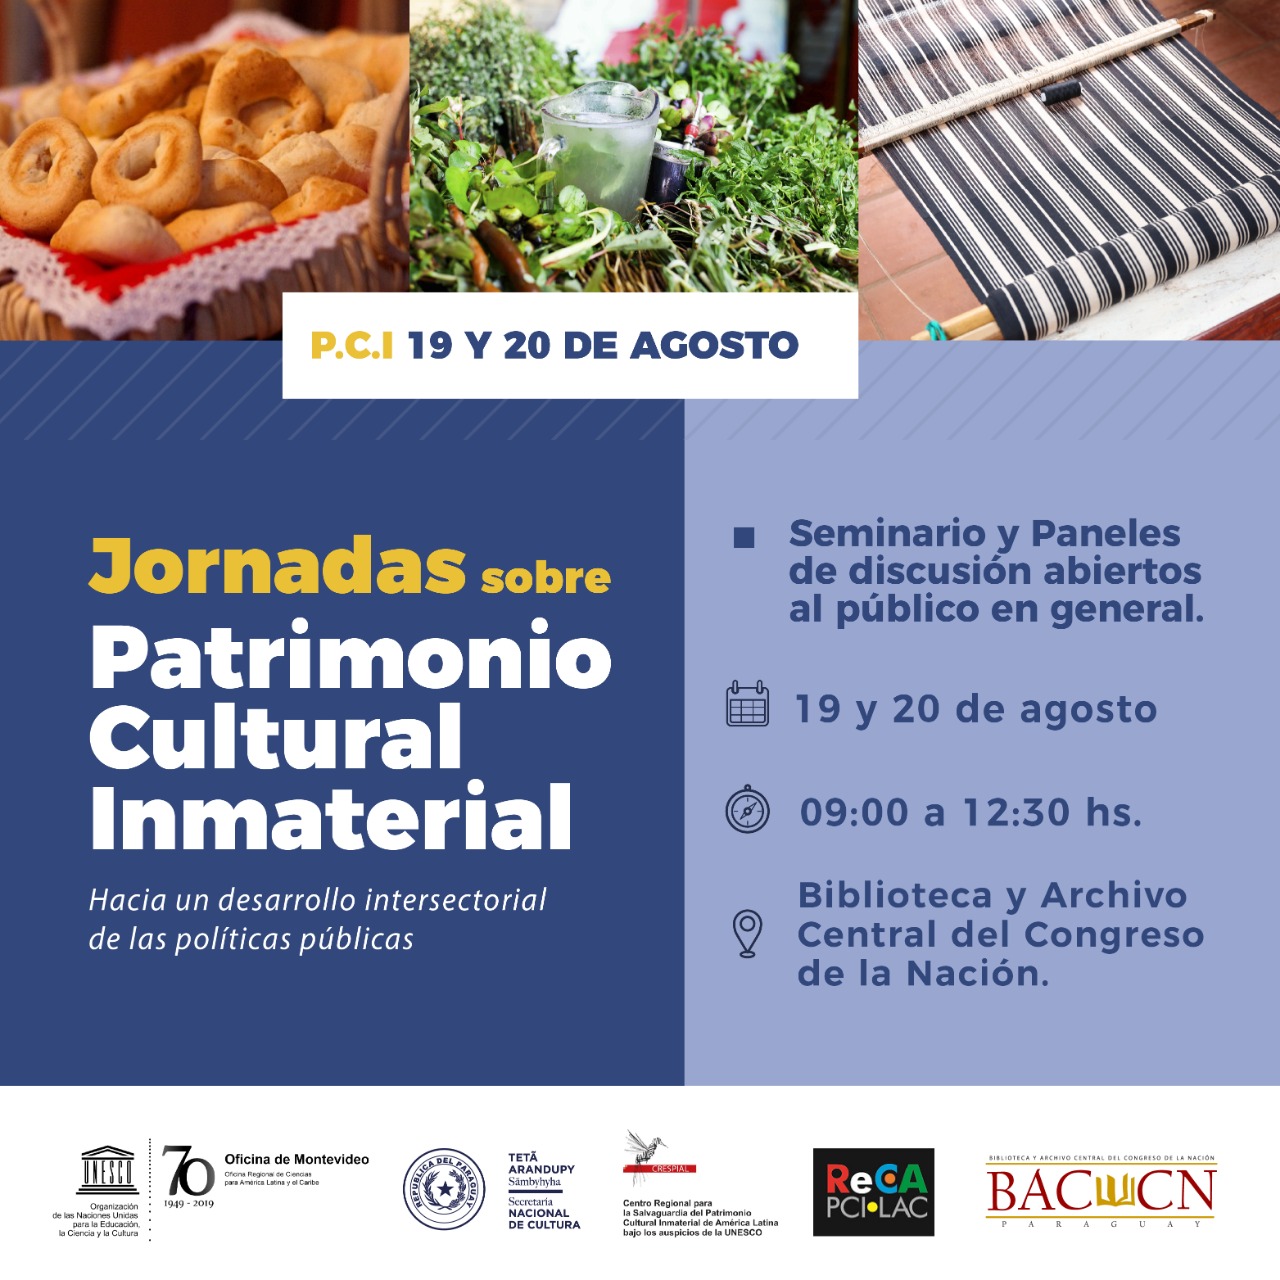 Realizarán Jornadas de Patrimonio Cultural Inmaterial en Paraguay abierta al público imagen